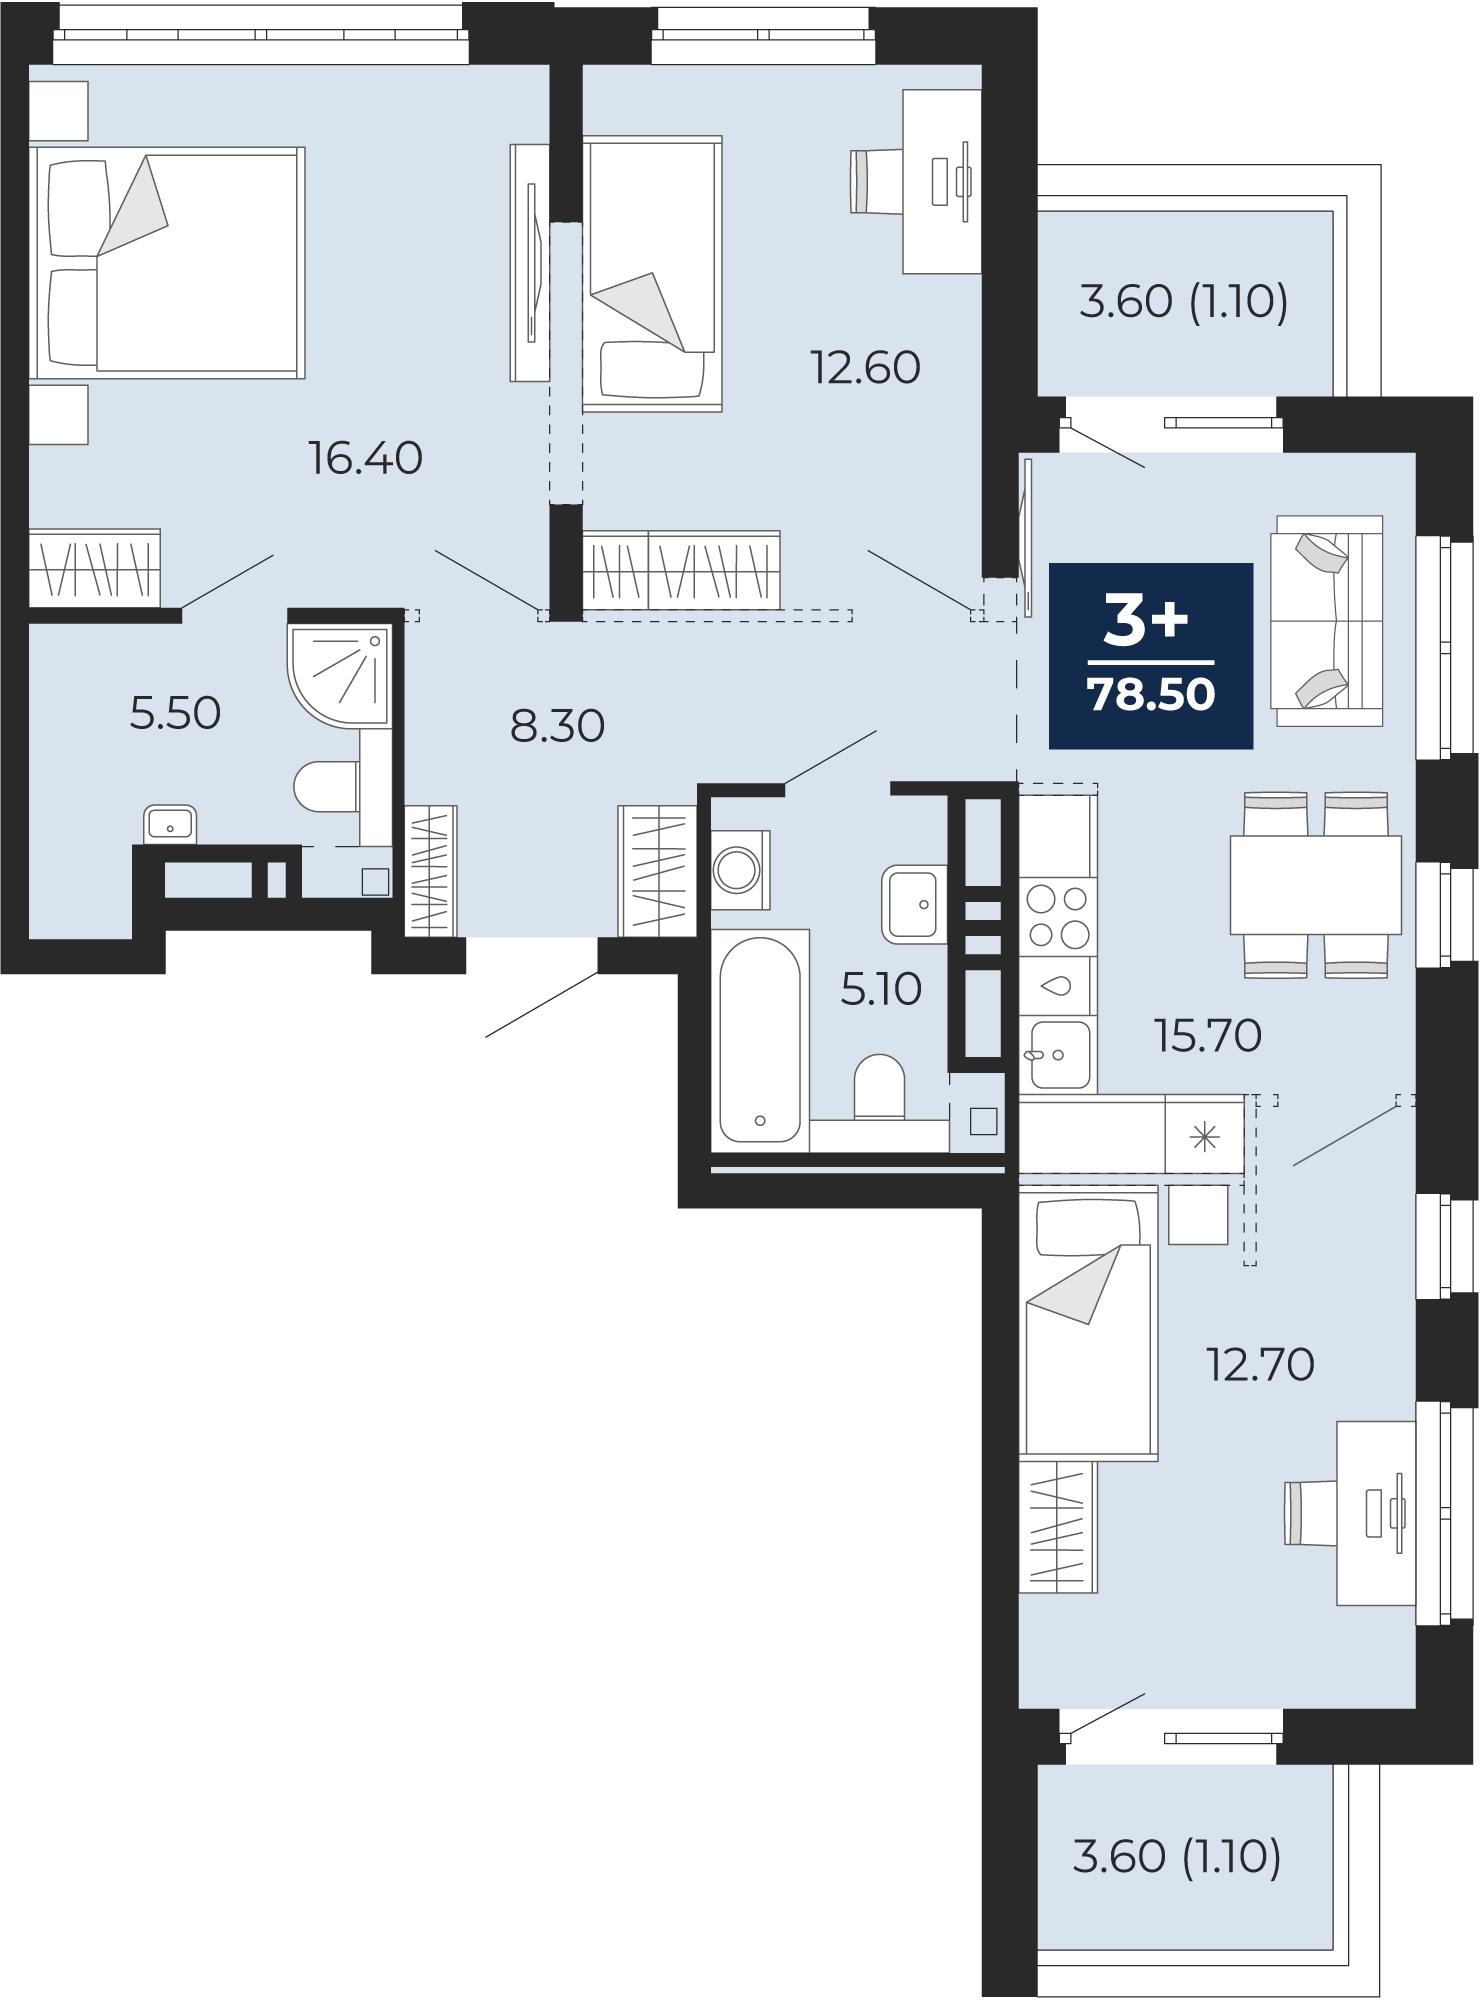 Квартира № 422, 3-комнатная, 78.5 кв. м, 15 этаж